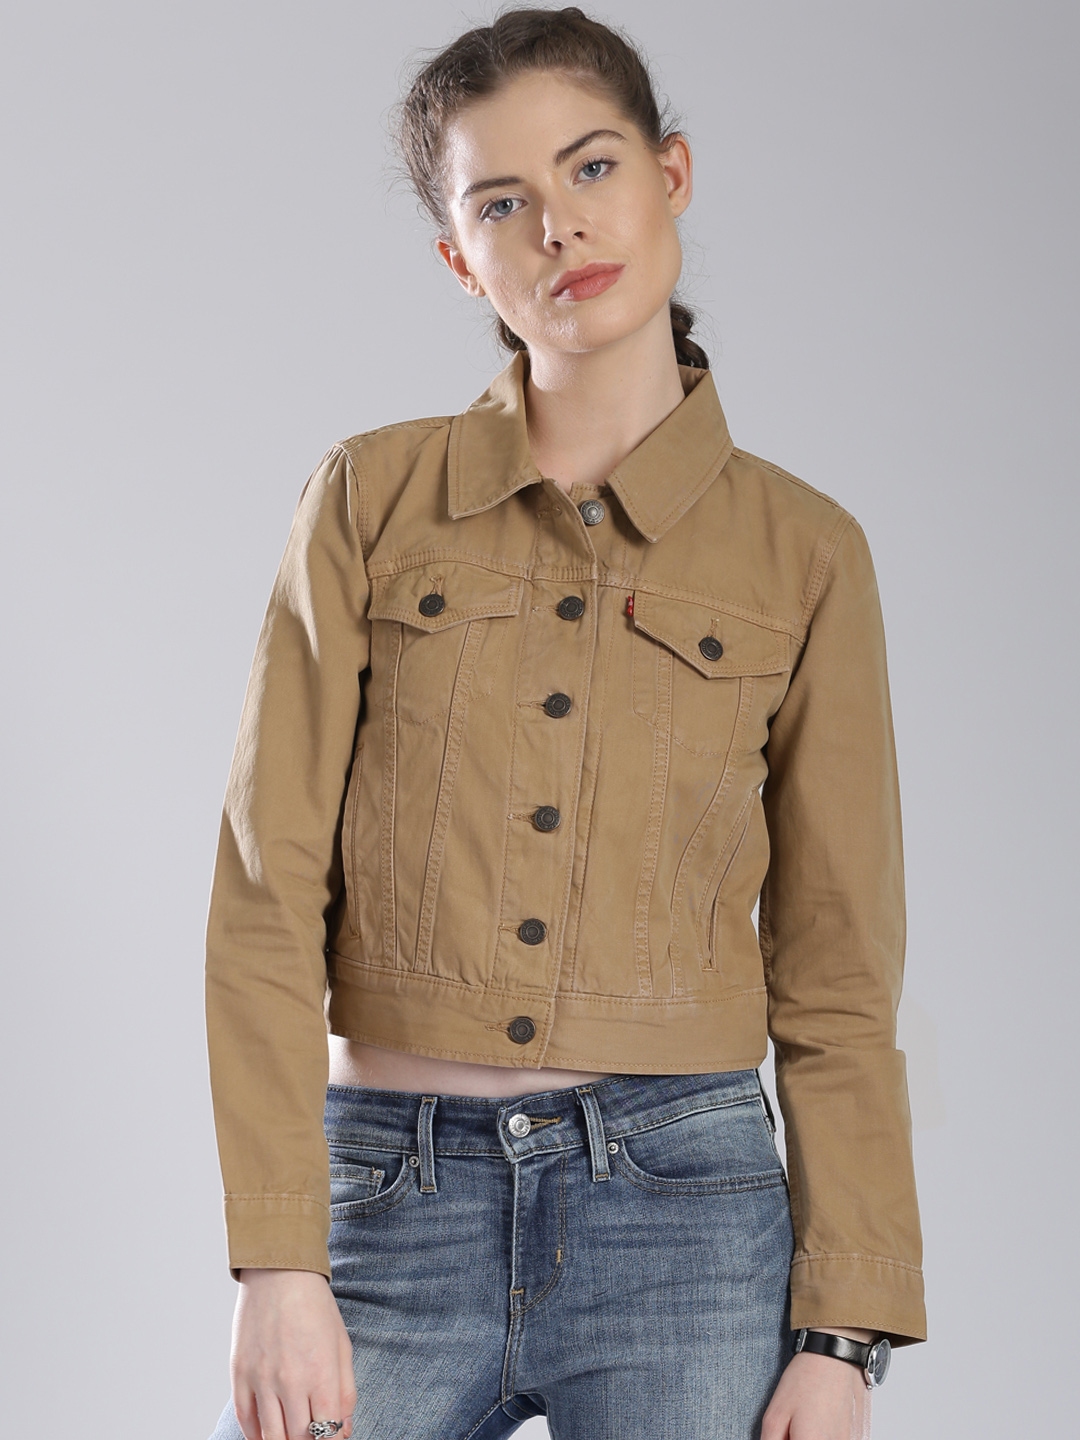 Buy Levi's Beige Denim Jacket - Jackets for Women 1492743 | Myntra